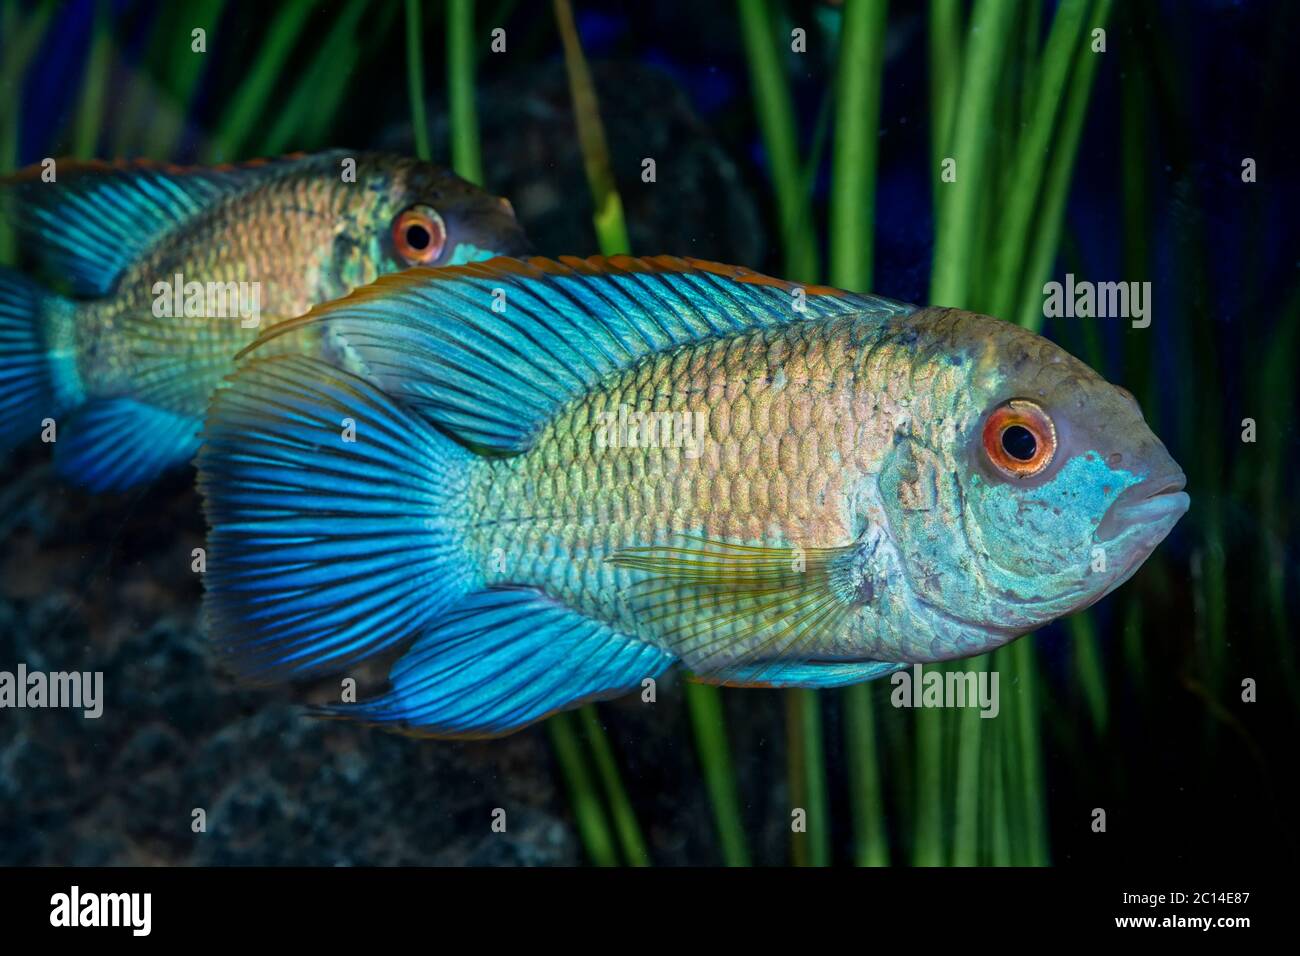 Portrait of cichlid fish (Andinoacara sp.) in aquarium Stock Photo